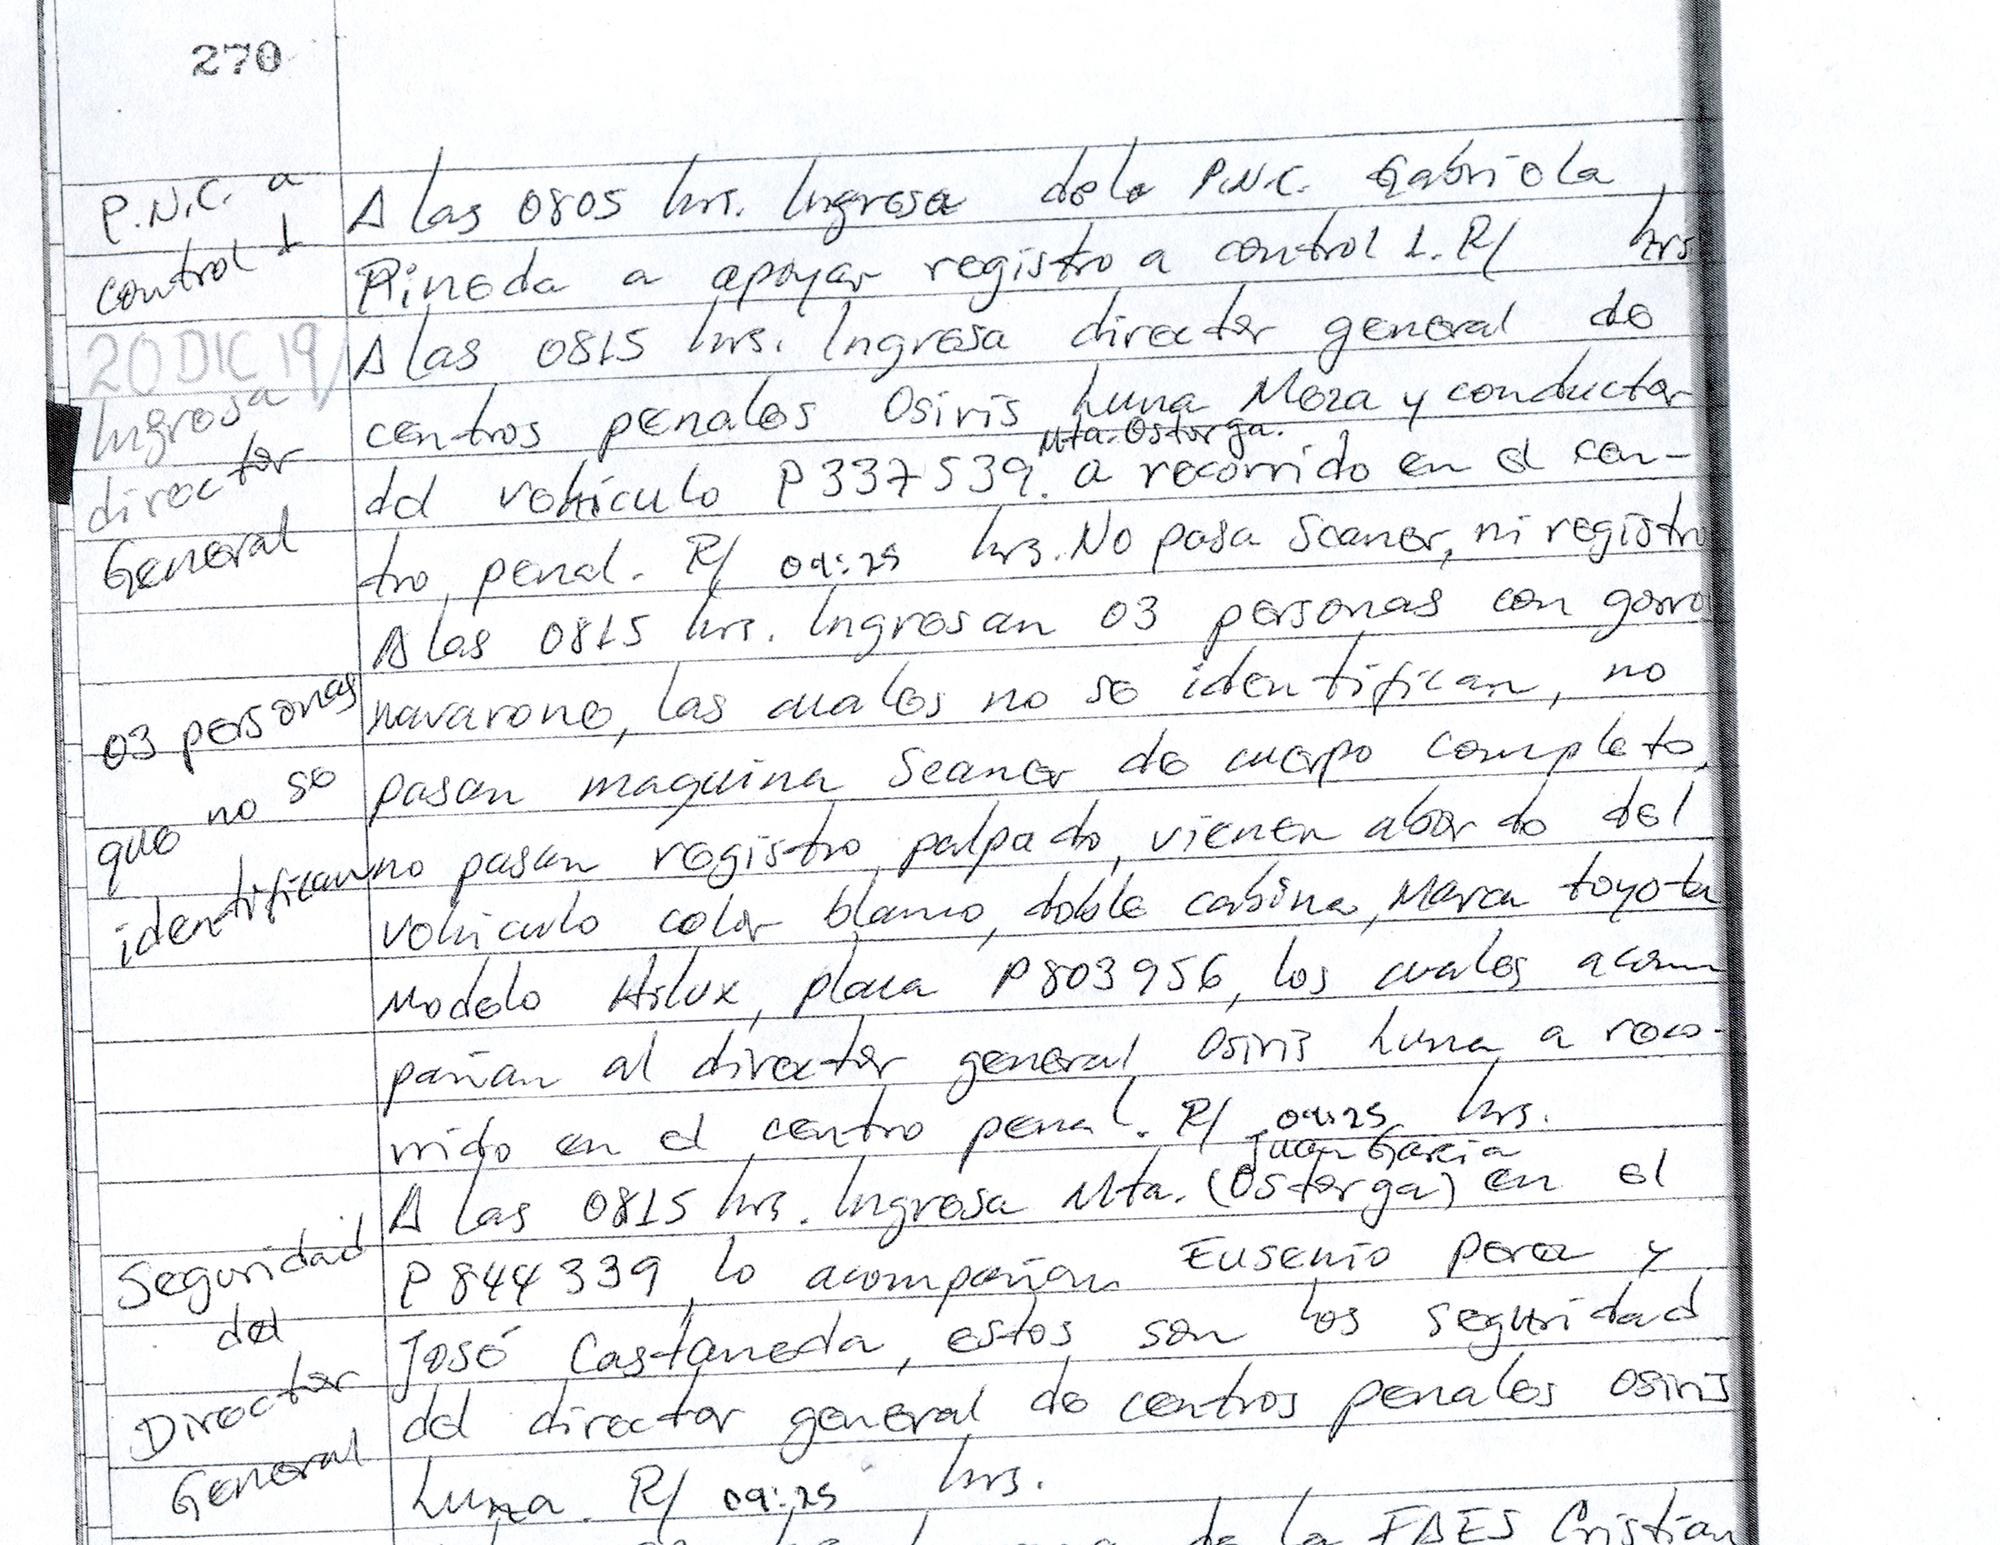 El 20 de diciembre, de 8:15 a 9:25 de la mañana, según libro de novedades, estuvieron en el penal de Zacatecoluca el director de Centros Penales Osiris Luna con tres compañantes con navarone que no pasan scaner de cuerpo entero ni registro palpado. Llegaron en los carros P337-539 y el Hilux P803-956.